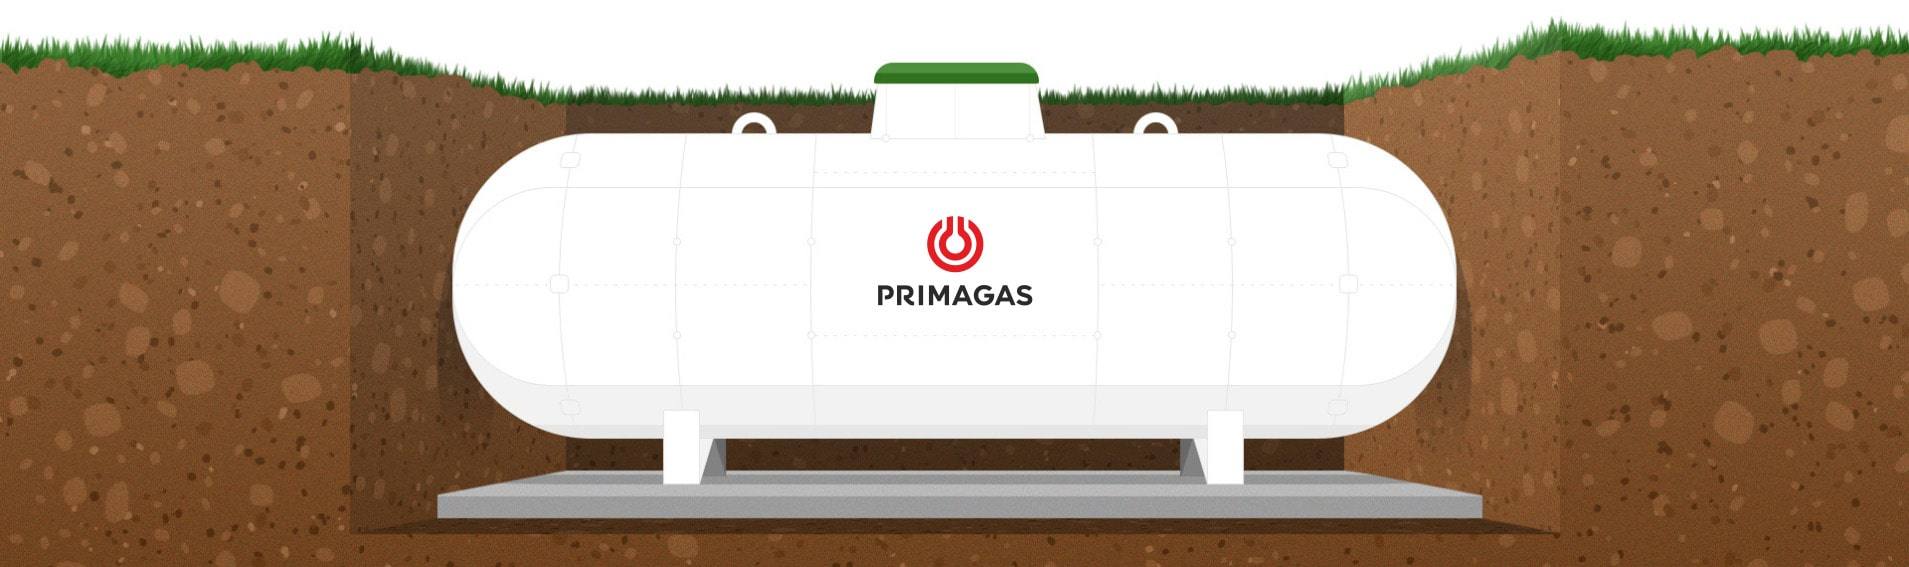 LPG nádrž PRIMAGAS podzemní